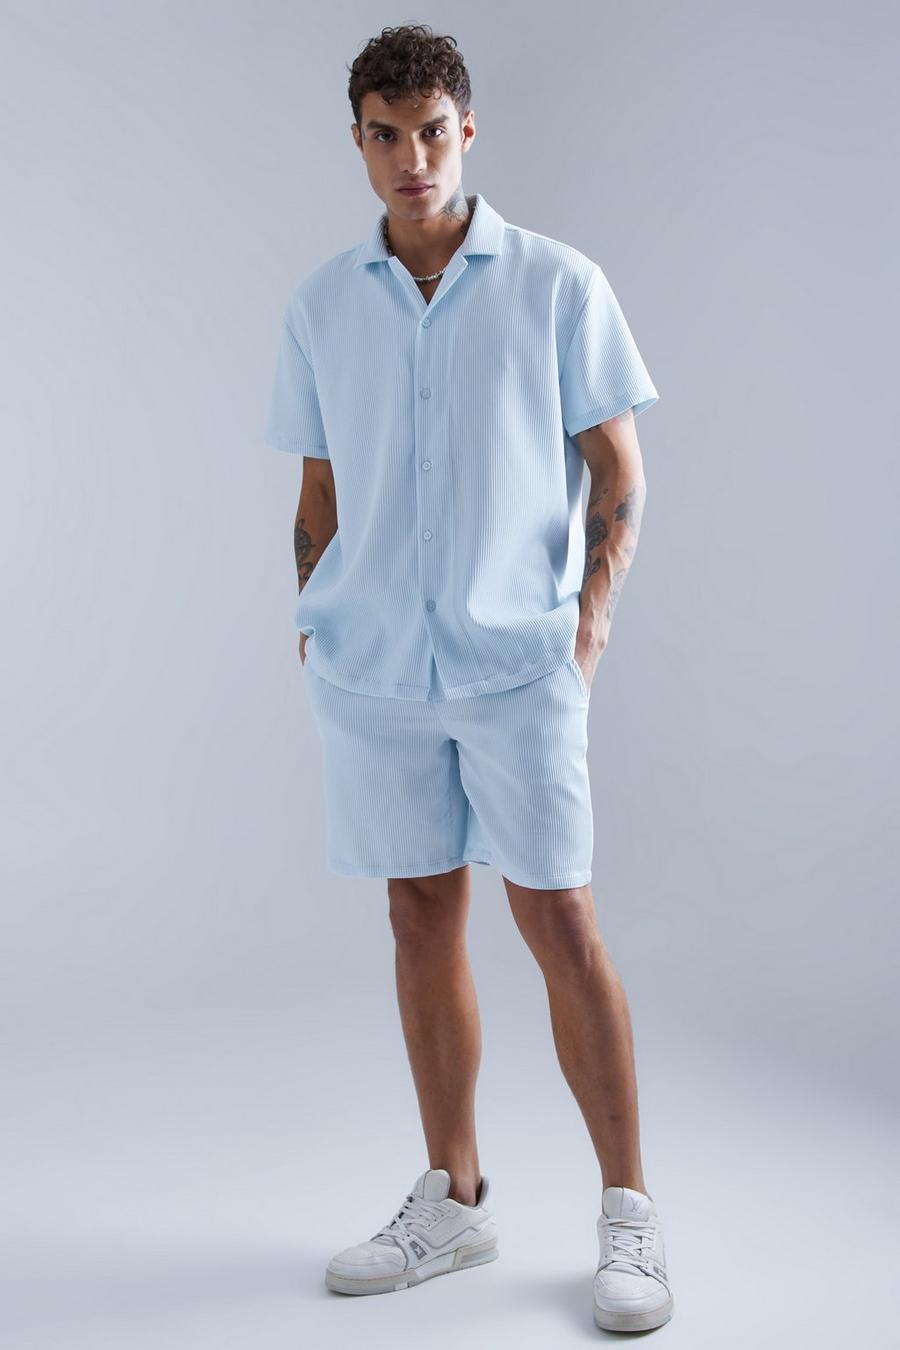 Grey blue Oversized Short Sleeve Pleated Shirt And Short